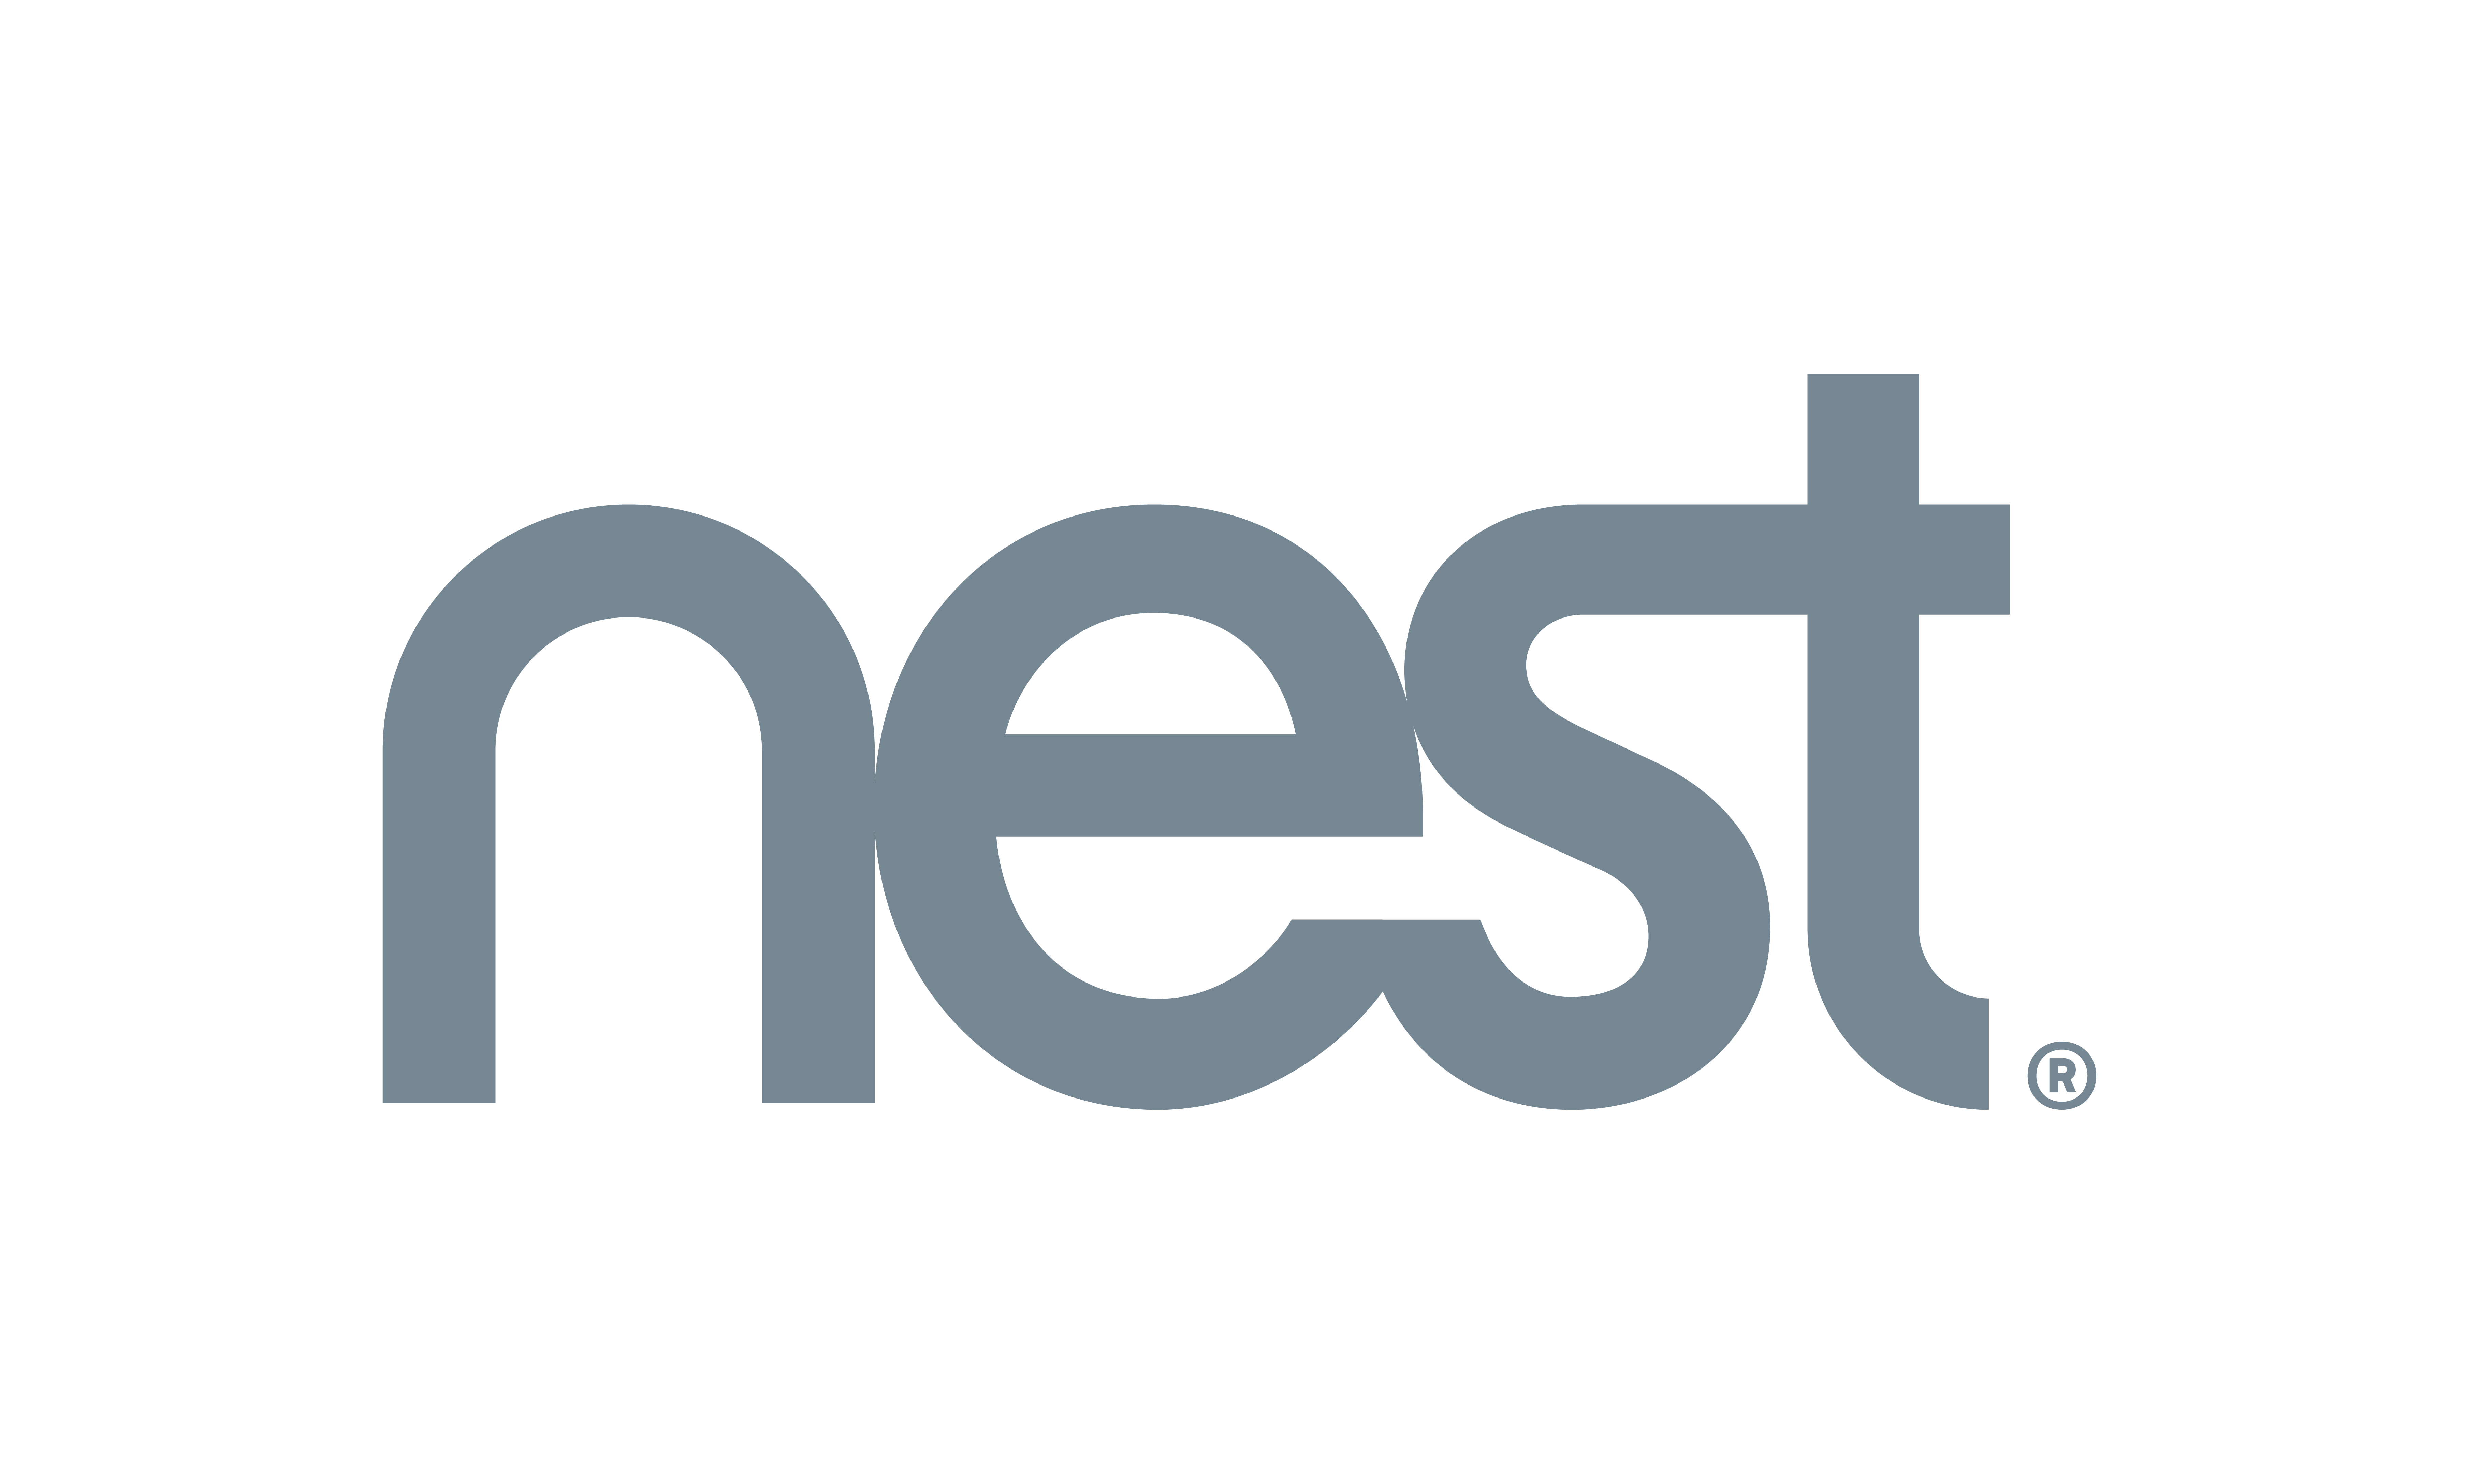 Nest data integration